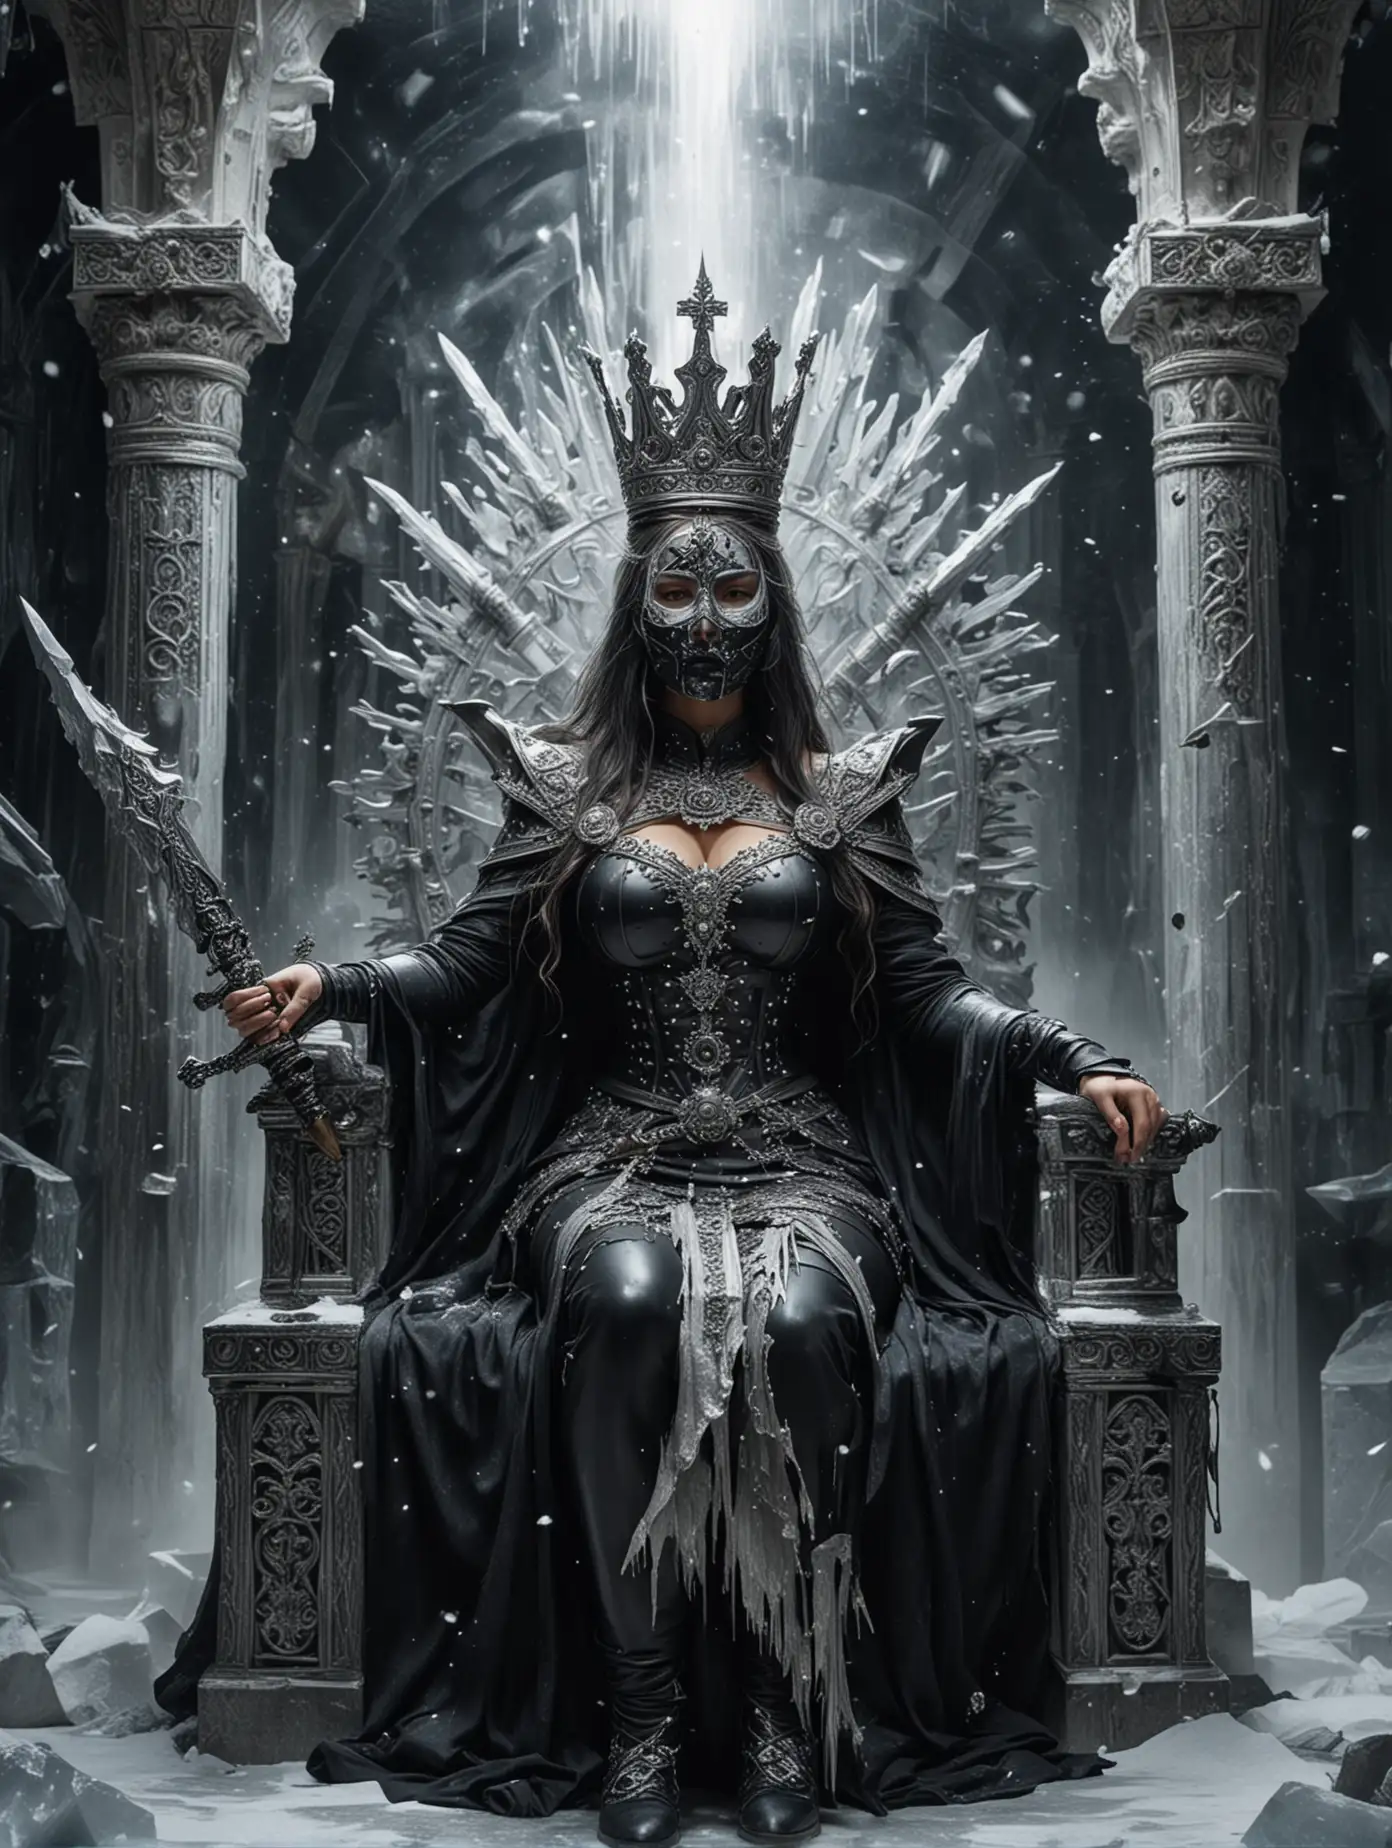 Массивная Женщина сидит на ледяном резном троне. Лицо закрывает защитная черная маска. Волосы белые, на голове серебряная корона с множеством лучей. В руке резной меч. Позади нее космос и черная дыра.